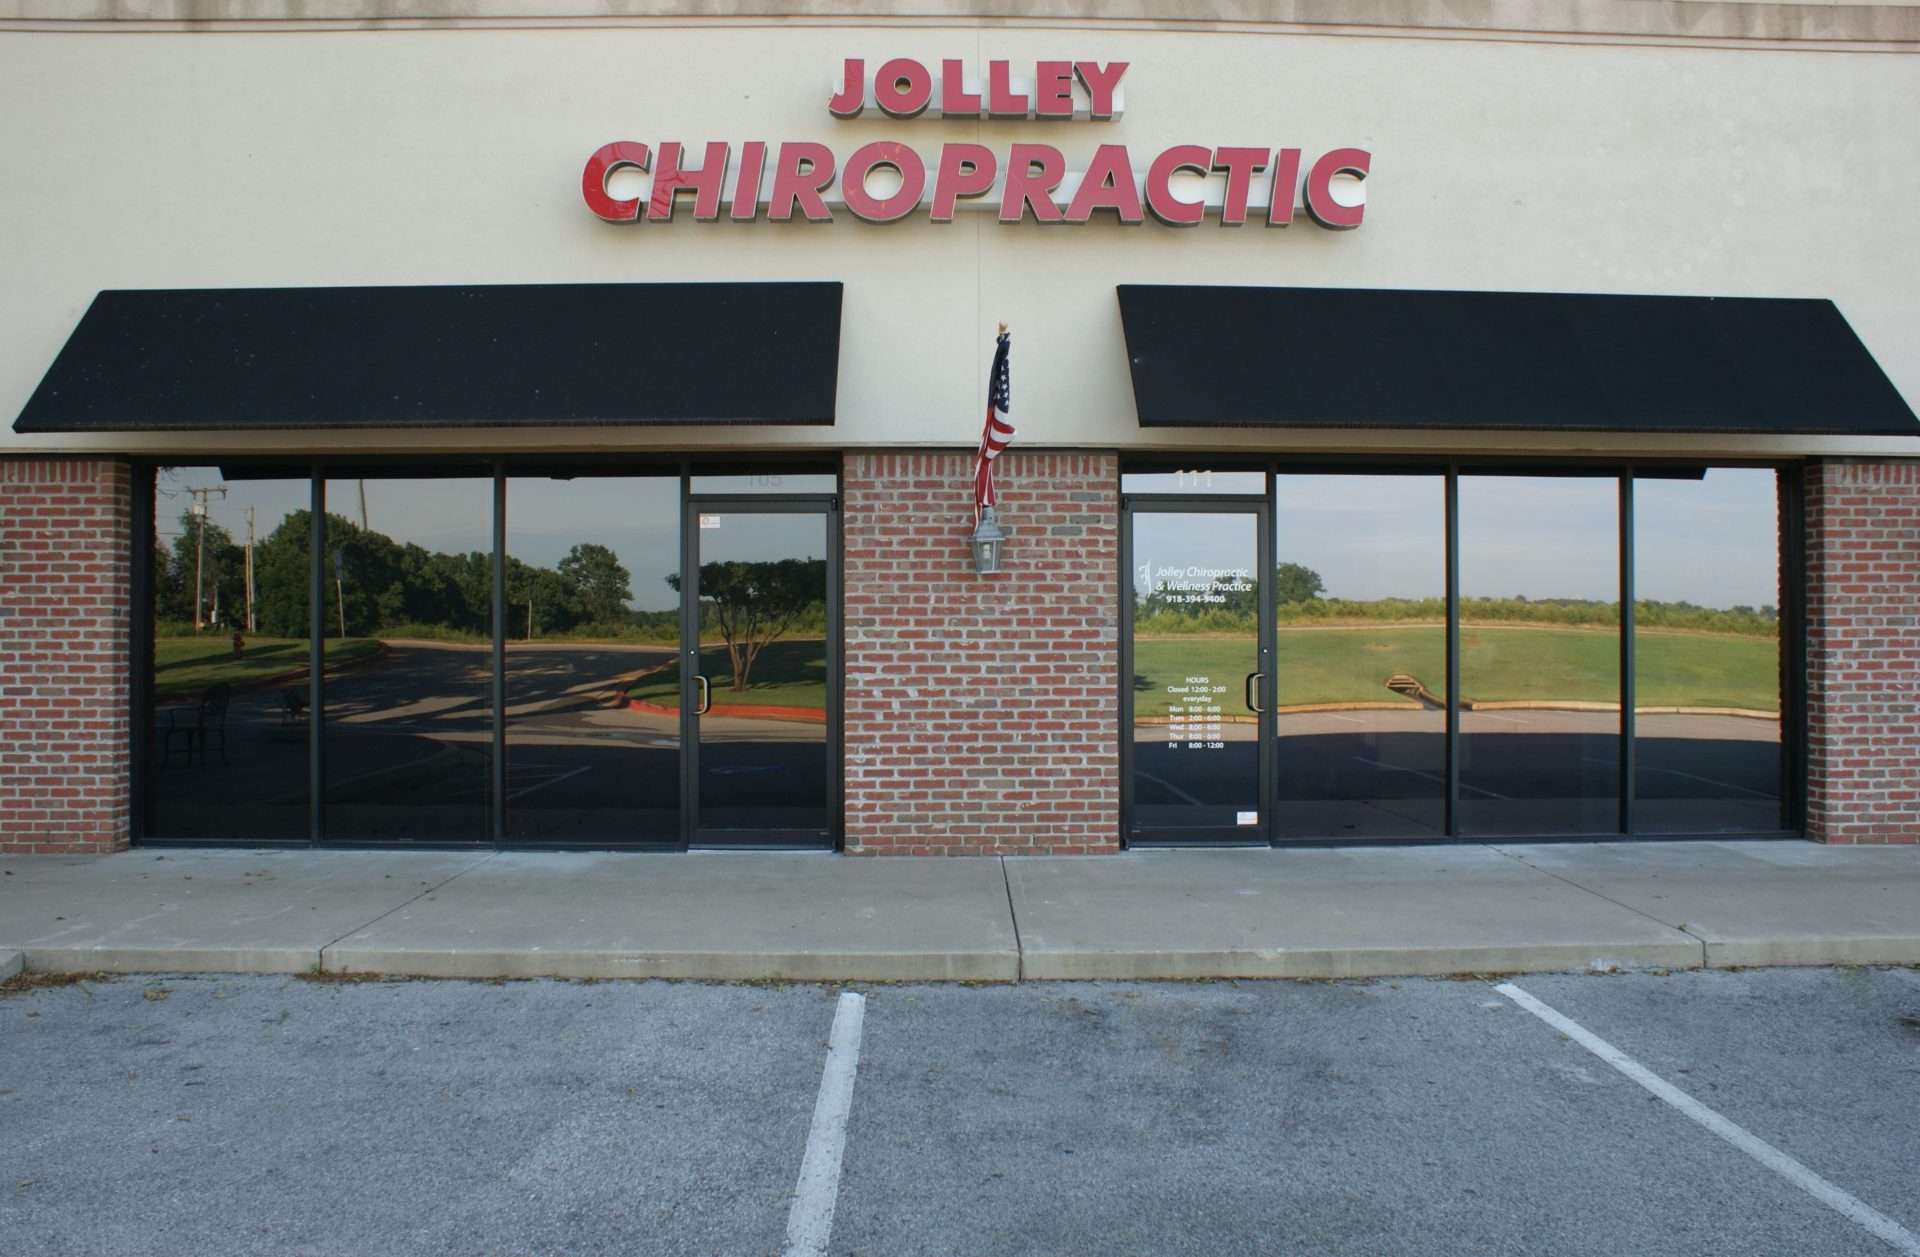 Jolley Chiropractic & Wellness Practice front